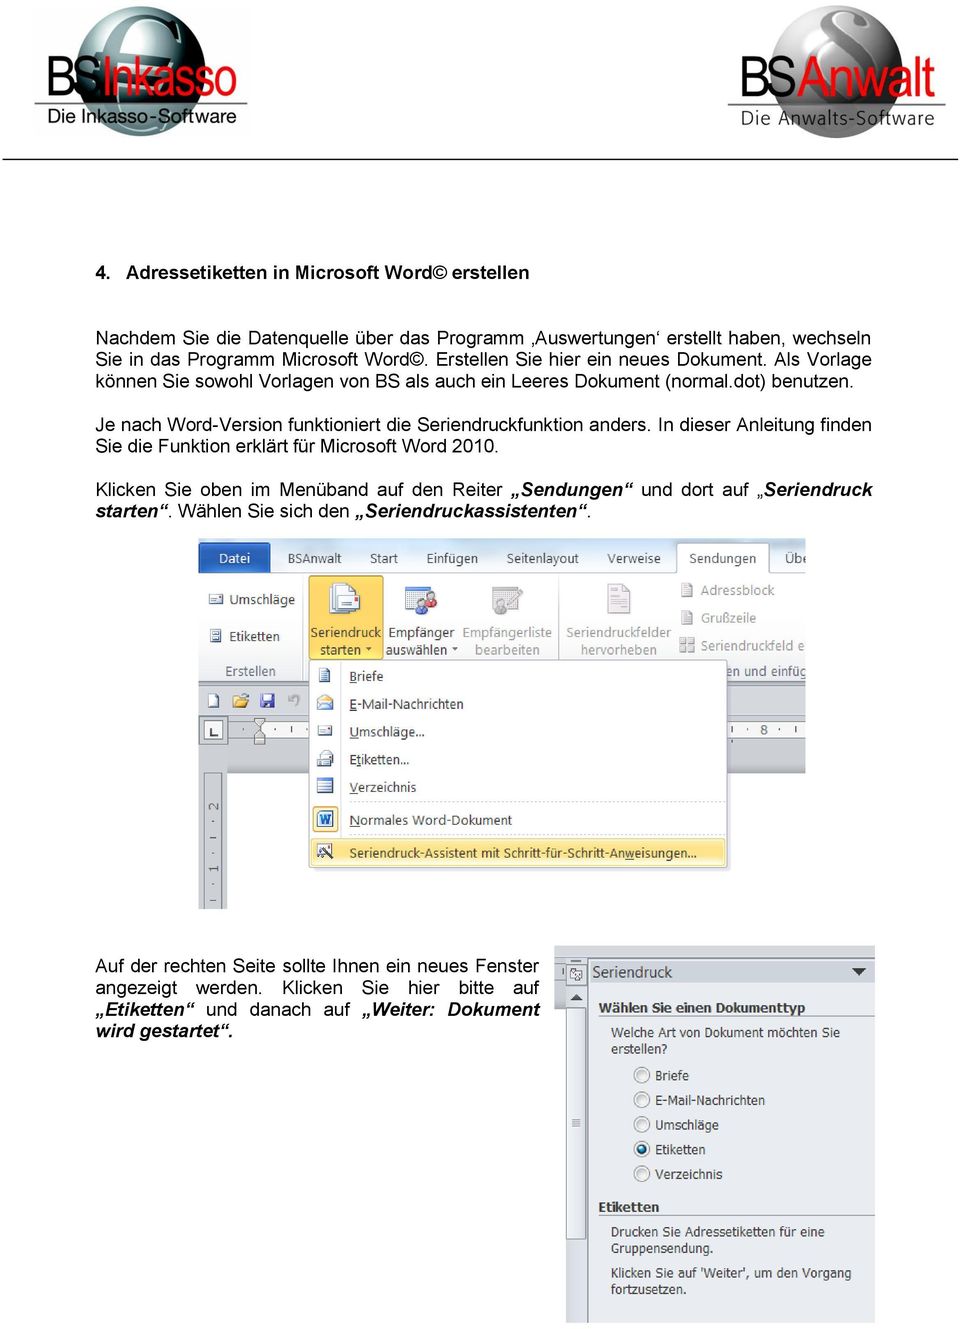 Je nach Word-Version funktioniert die Seriendruckfunktion anders. In dieser Anleitung finden Sie die Funktion erklärt für Microsoft Word 2010.